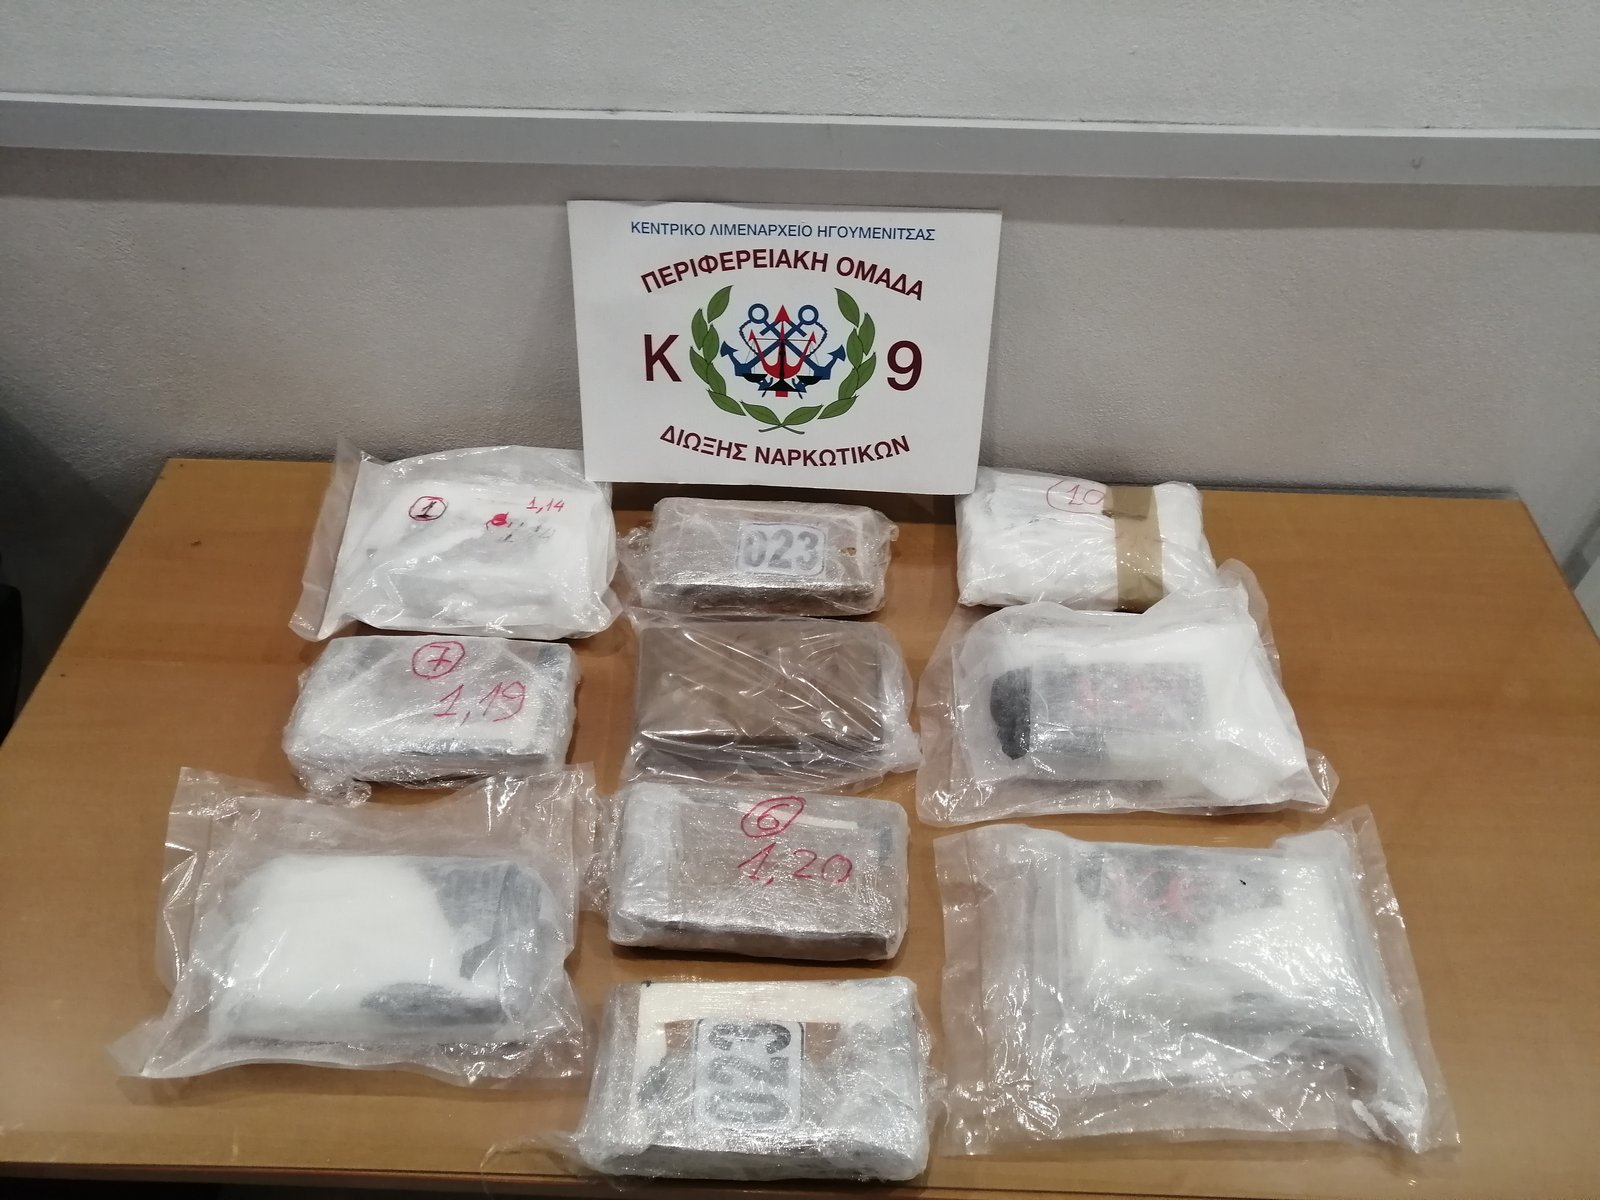 Το σπριντ του Βλάντ… ξετρύπωσε 11,5 κιλά κοκαΐνης